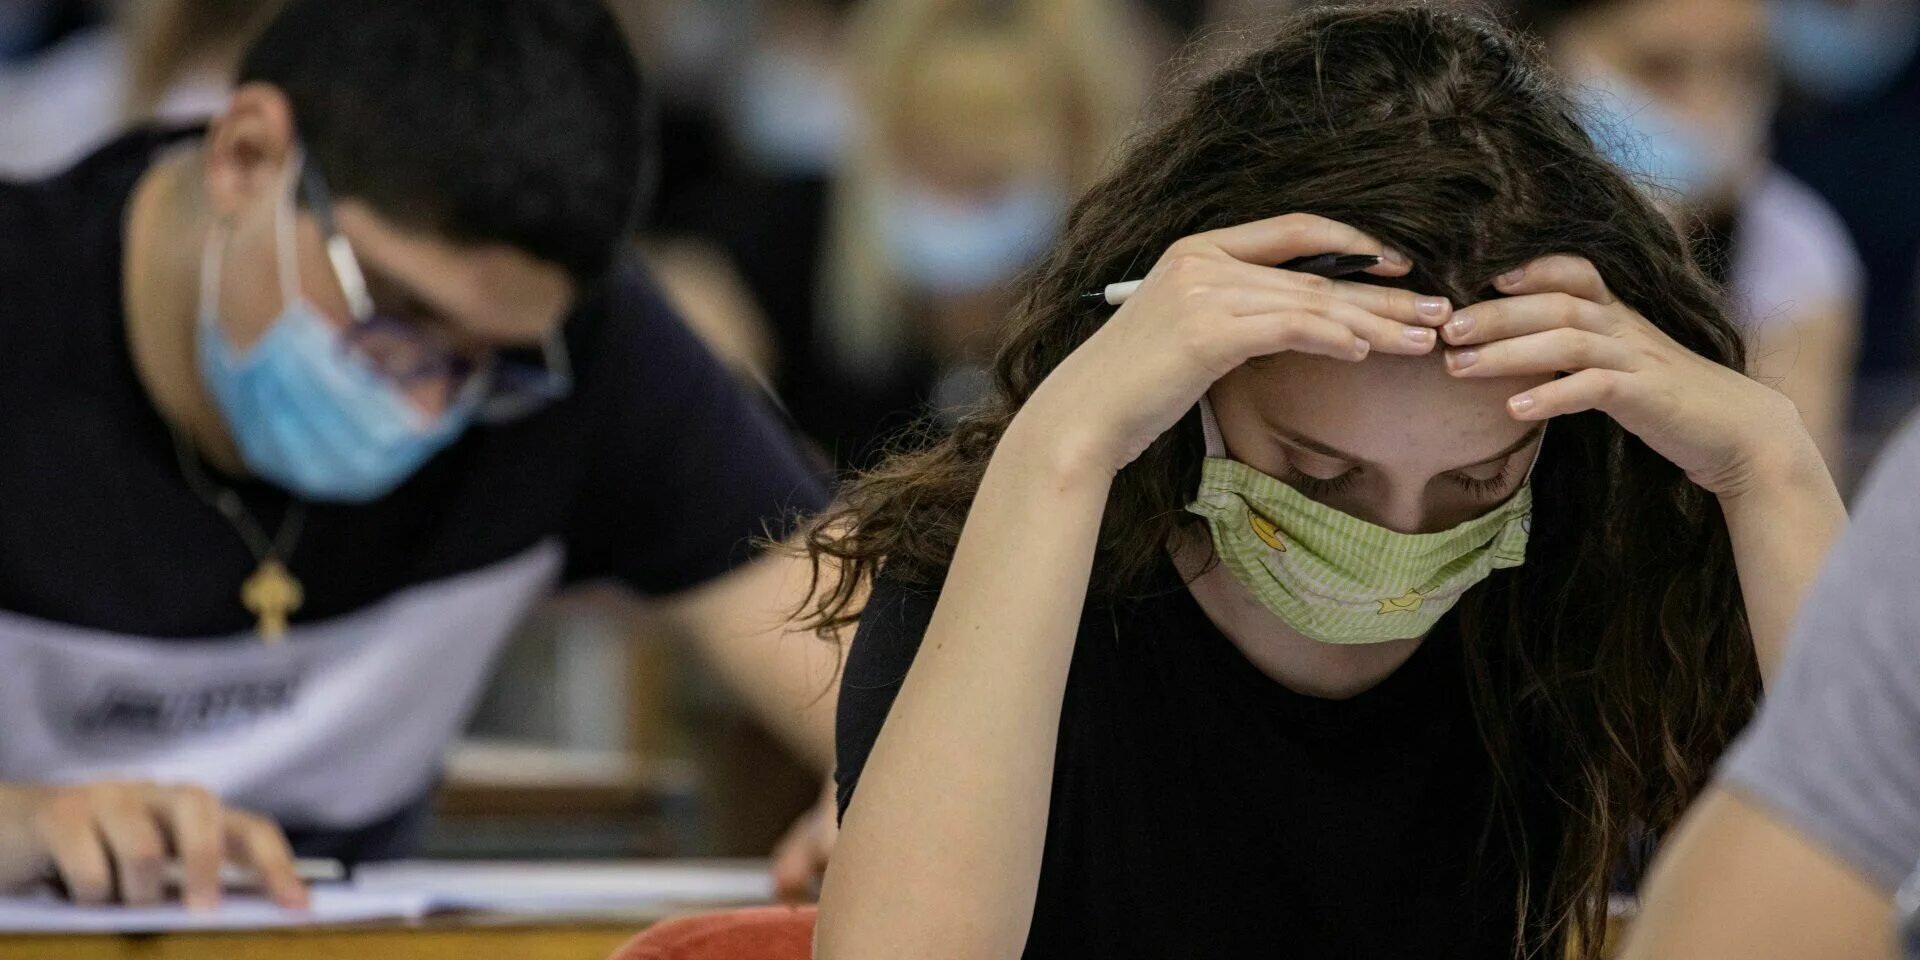 Изучение проблем студентов. Студенты в вузе в масках. Вузы в пандемию. Пандемия и образование. Студенты в аудитории.